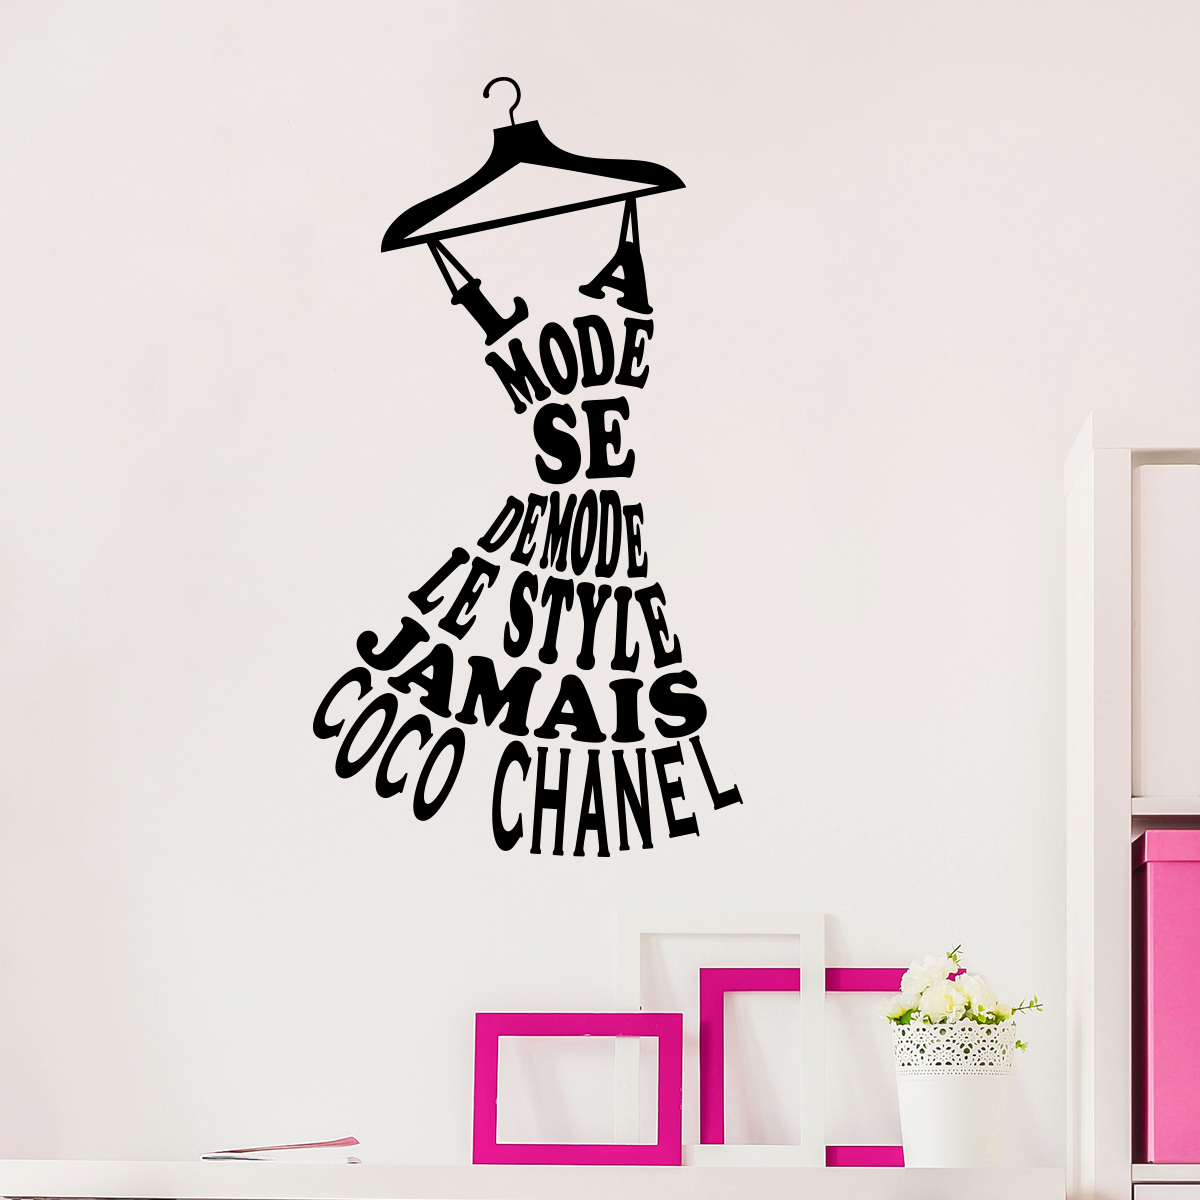 Wall decal La mode se démode le style jamais - Coco Chanel